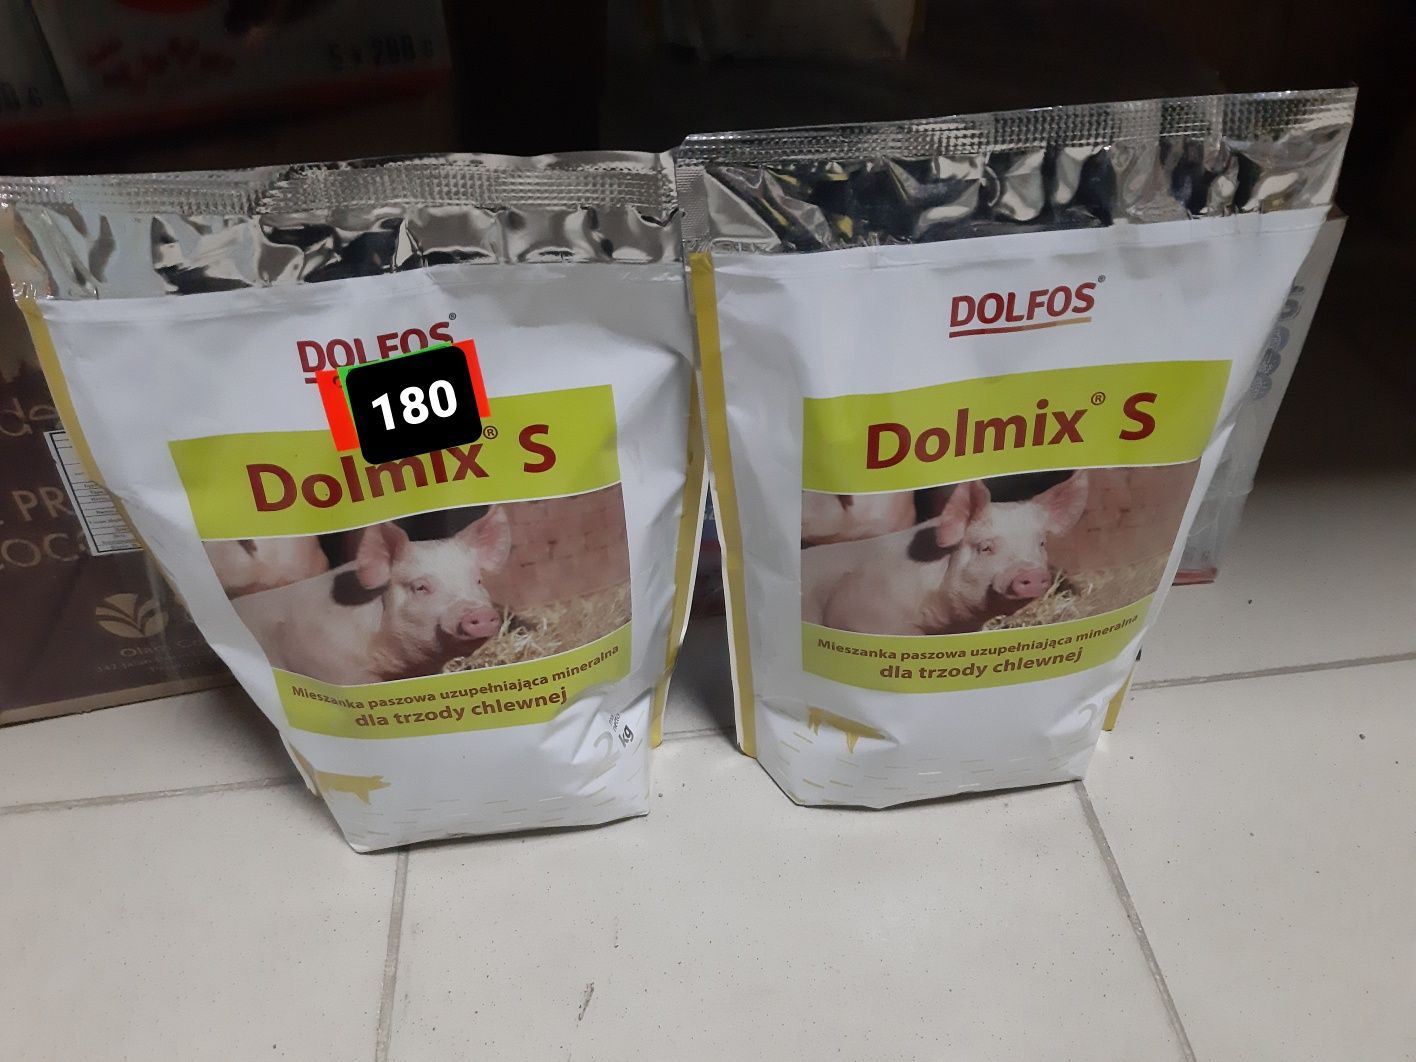 Dolfos Dolmix S премикс